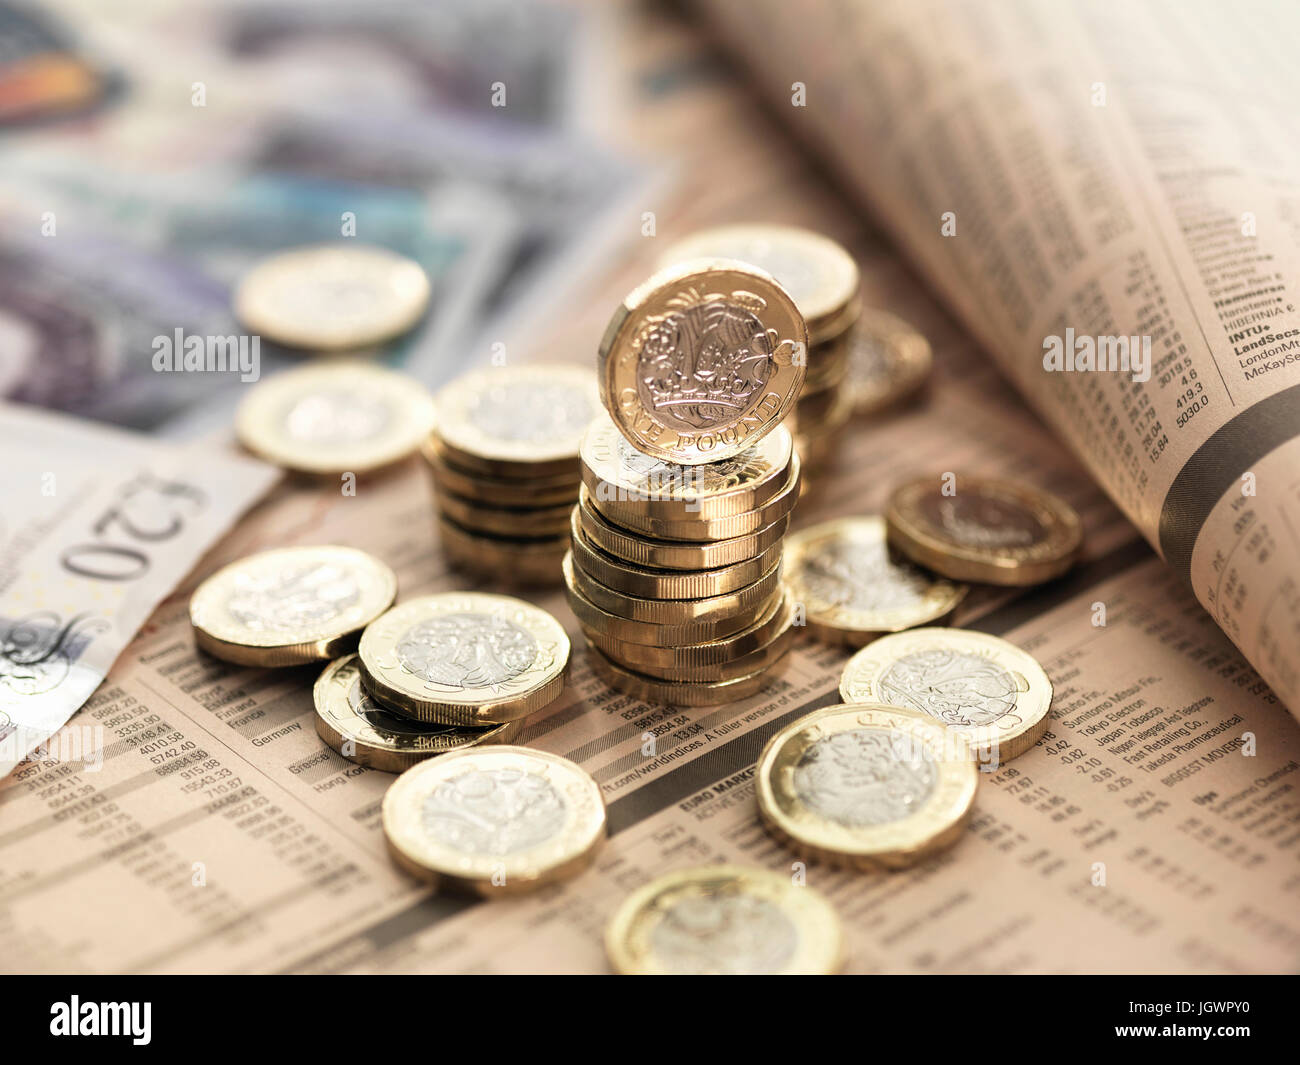 Stillleben der britischen Währung auf Finanzzeitung, Nahaufnahme Stockfoto